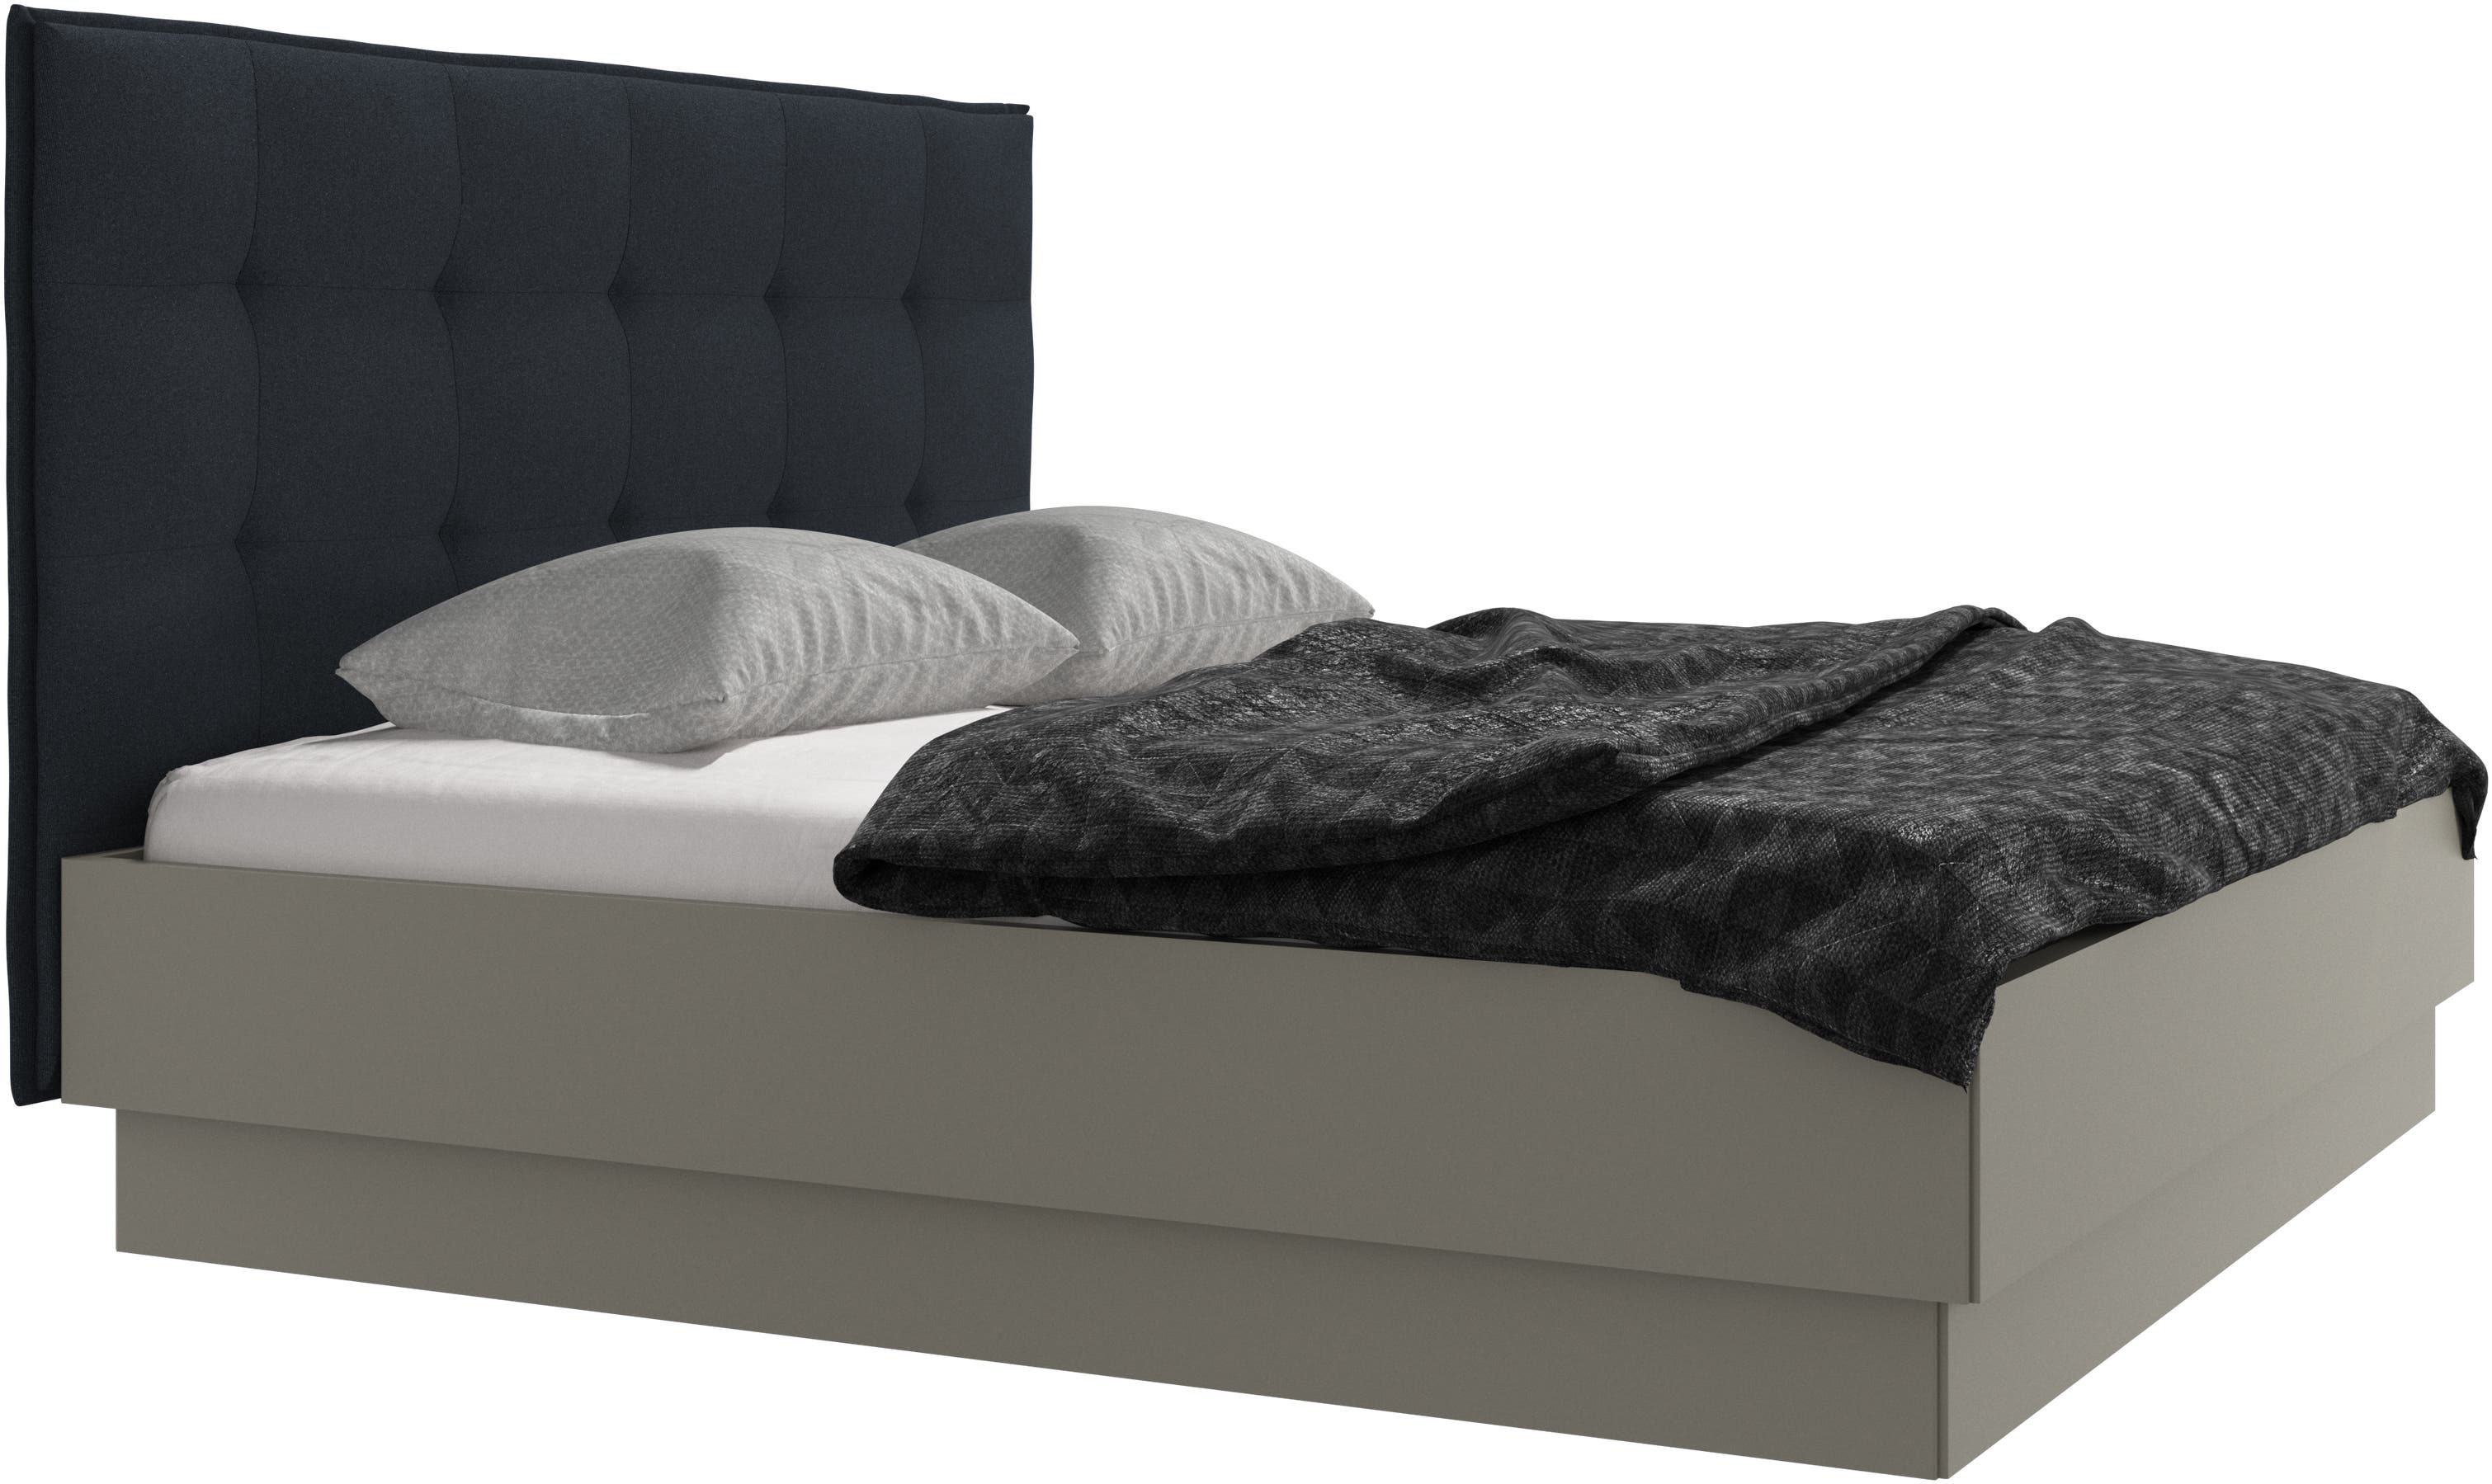 Lugano Bett mit Lattenrost und Staufach unter hochklappbarer Liegefläche, Matratze gegen Aufpreis